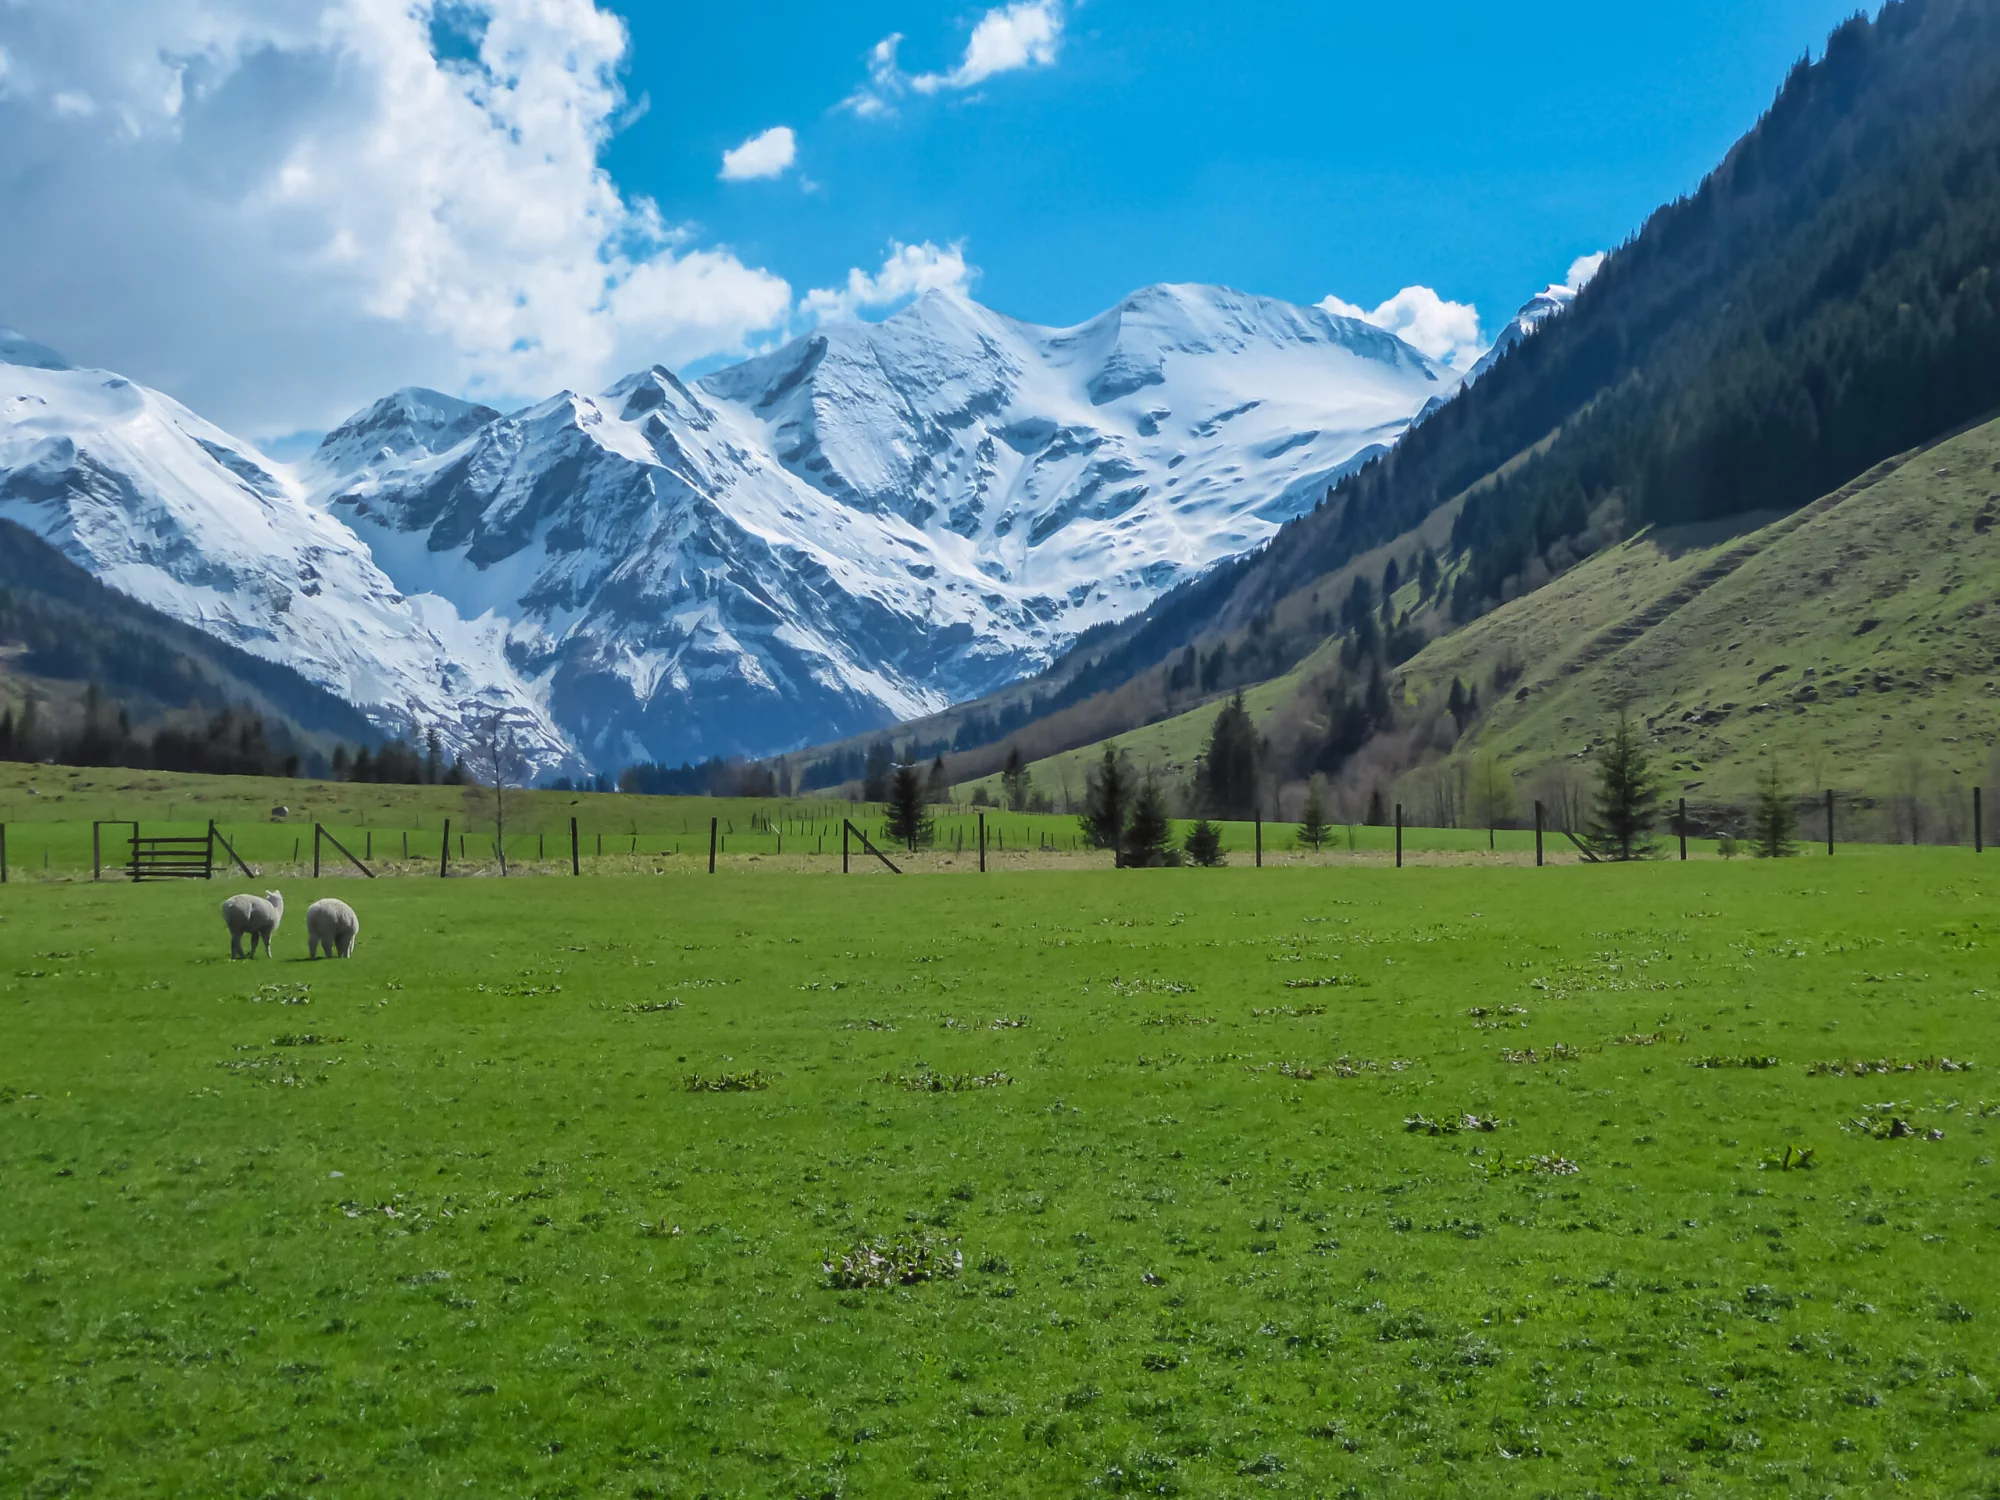 Sauer som beiter på en frodig, grønn alpeeng med panoramautsikt over de snødekte fjelltoppene i High Tauern i Fusch am Grossglockner, Salzburg, Østerrike. Vakker natur i de østerrikske Alpene